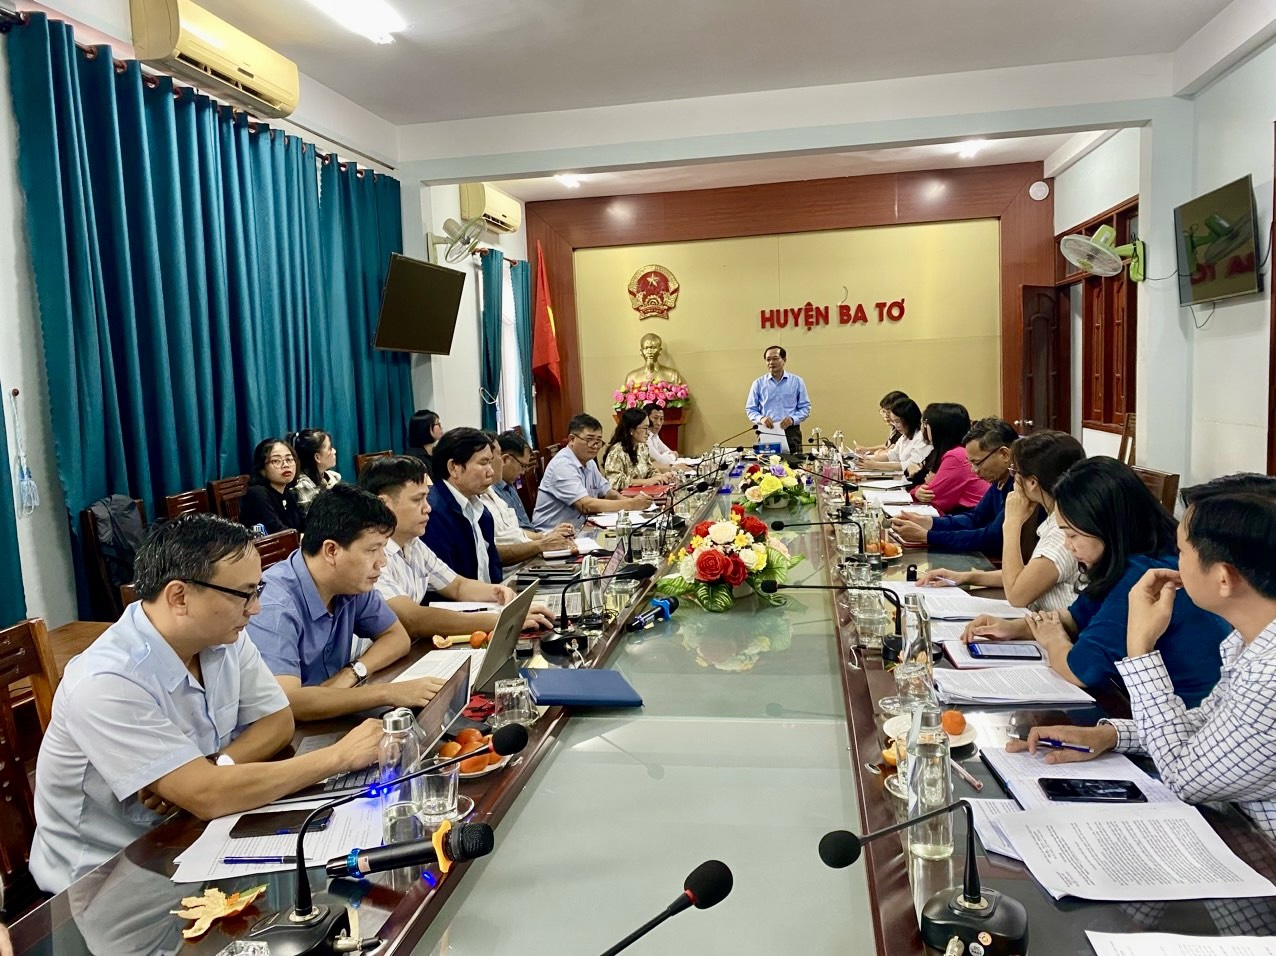 Sở Tư pháp thông qua dự thảo Báo cáo kết luận kiểm tra công tác ban hành văn bản quy phạm pháp luật của HĐND và UBND huyện Ba Tơ